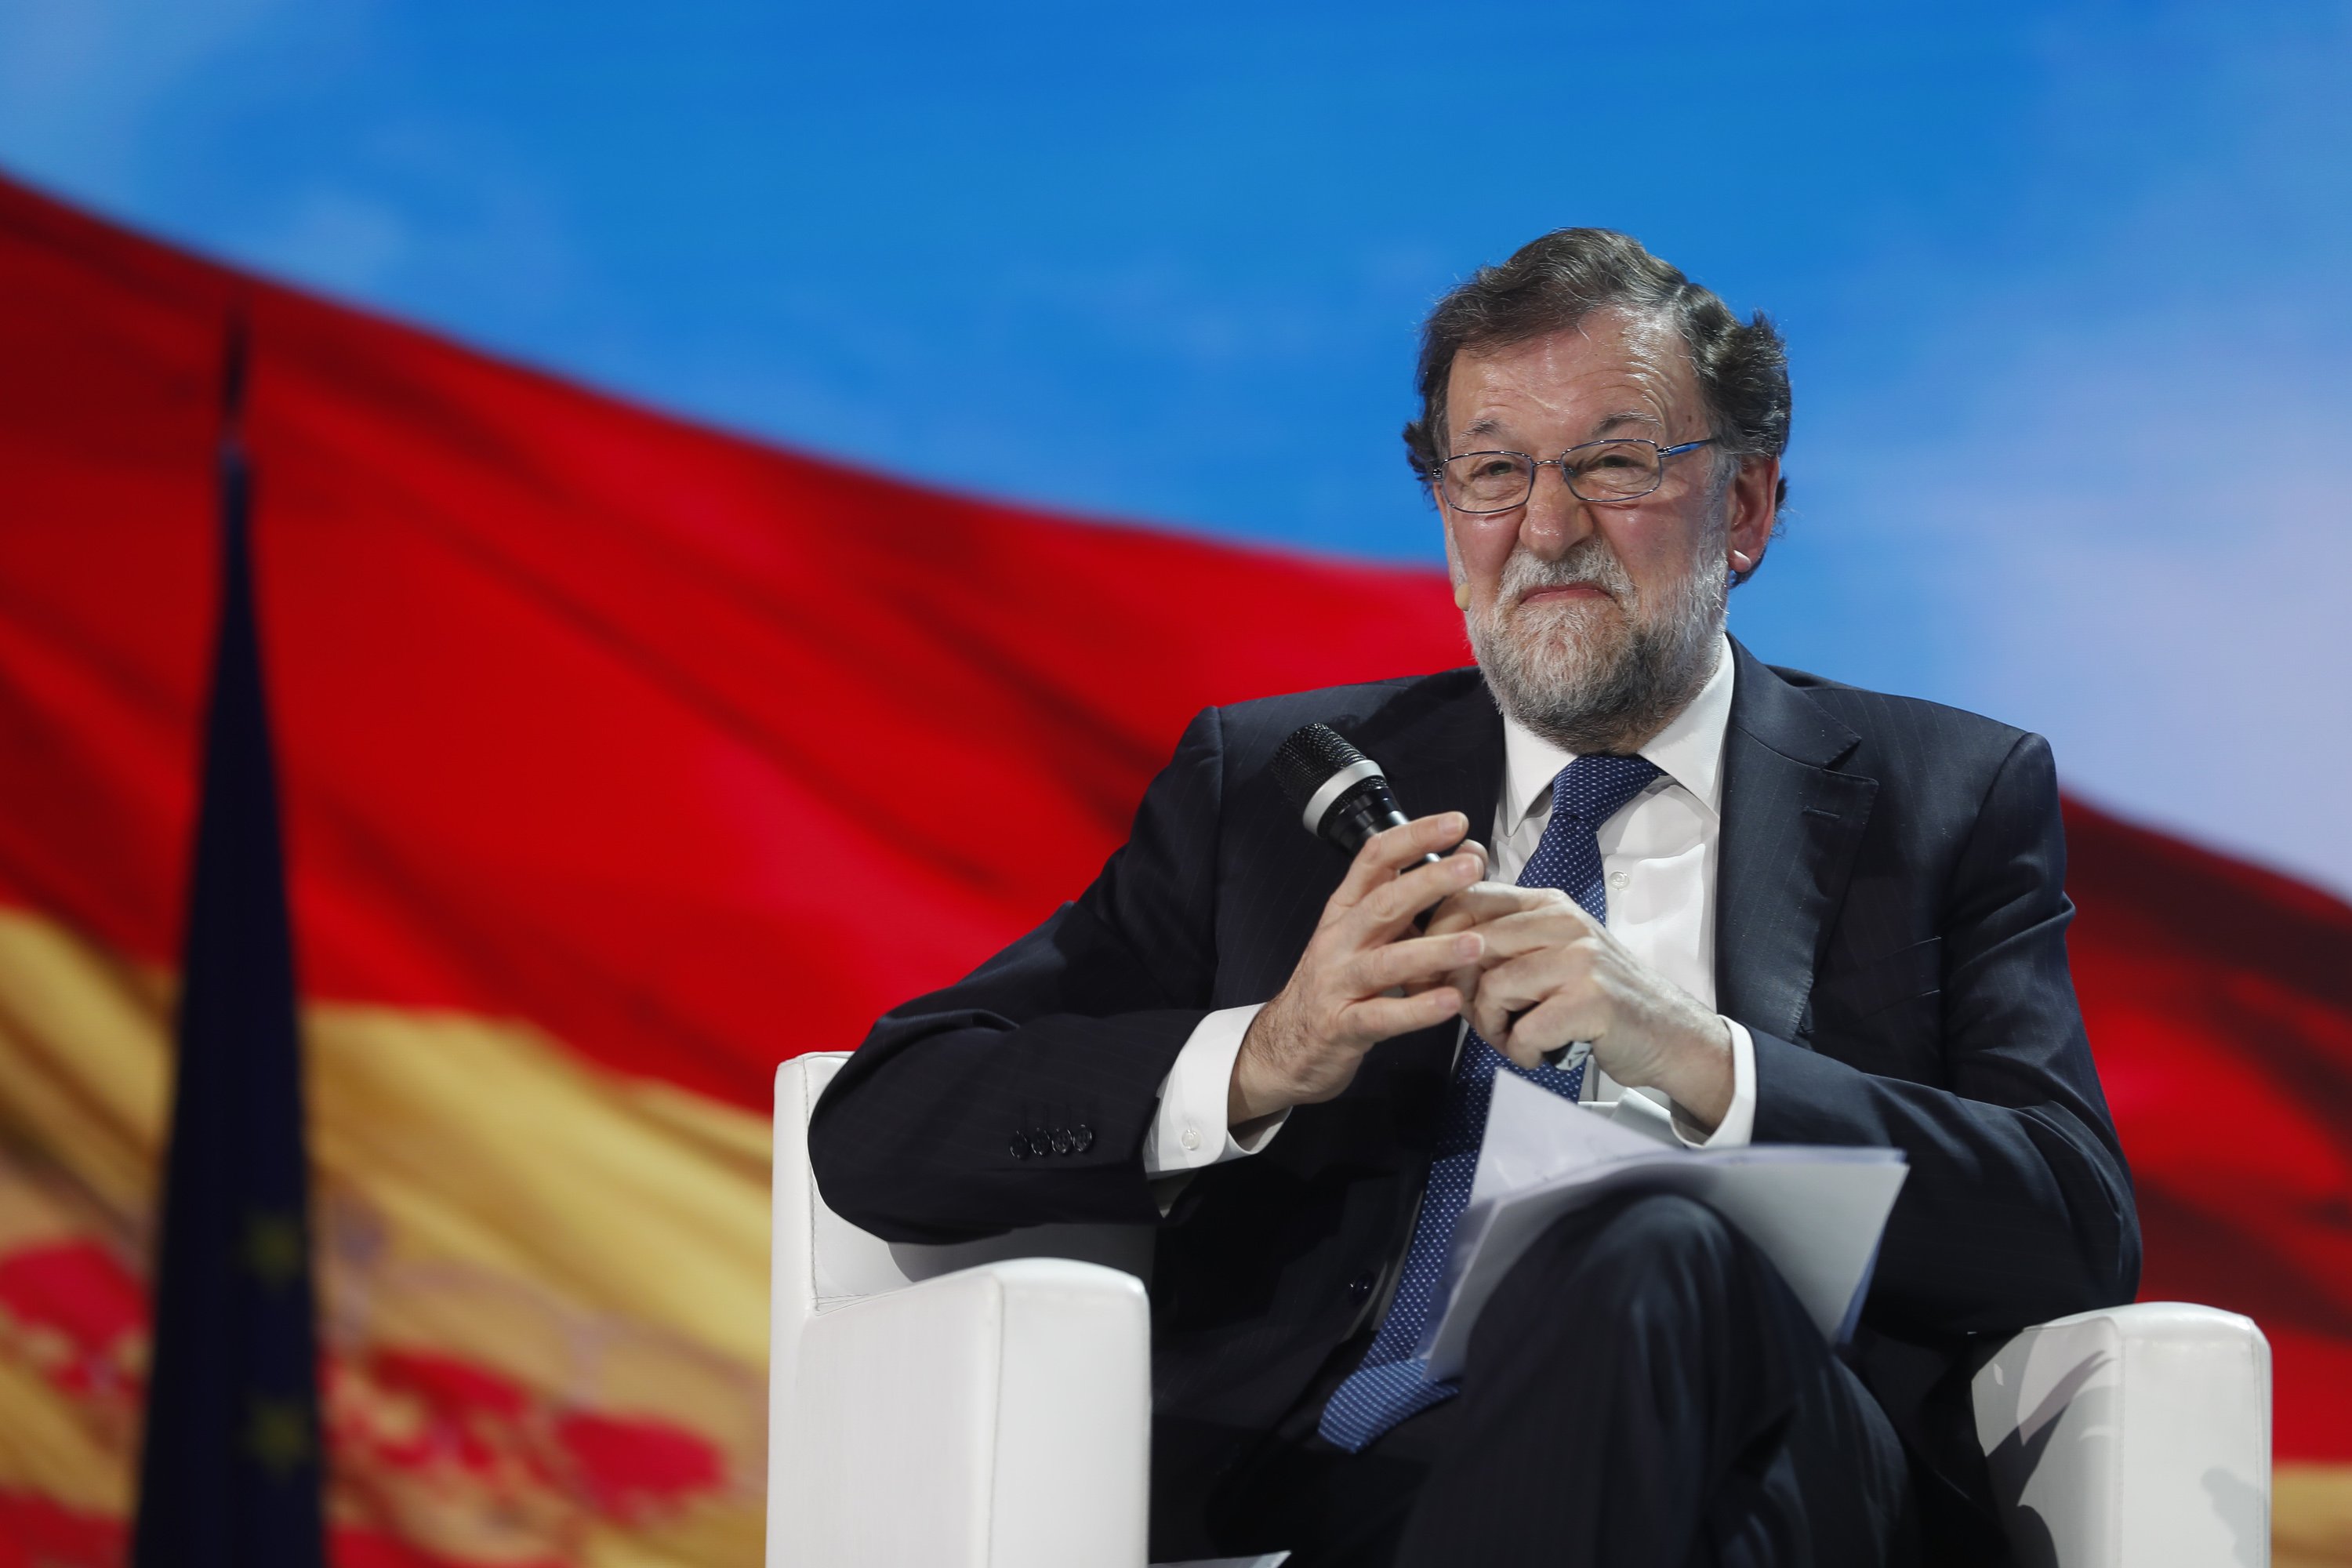 El nuevo look de Rajoy, ridículo: "señora mayor, payaso Krusty, Dama de Elche"